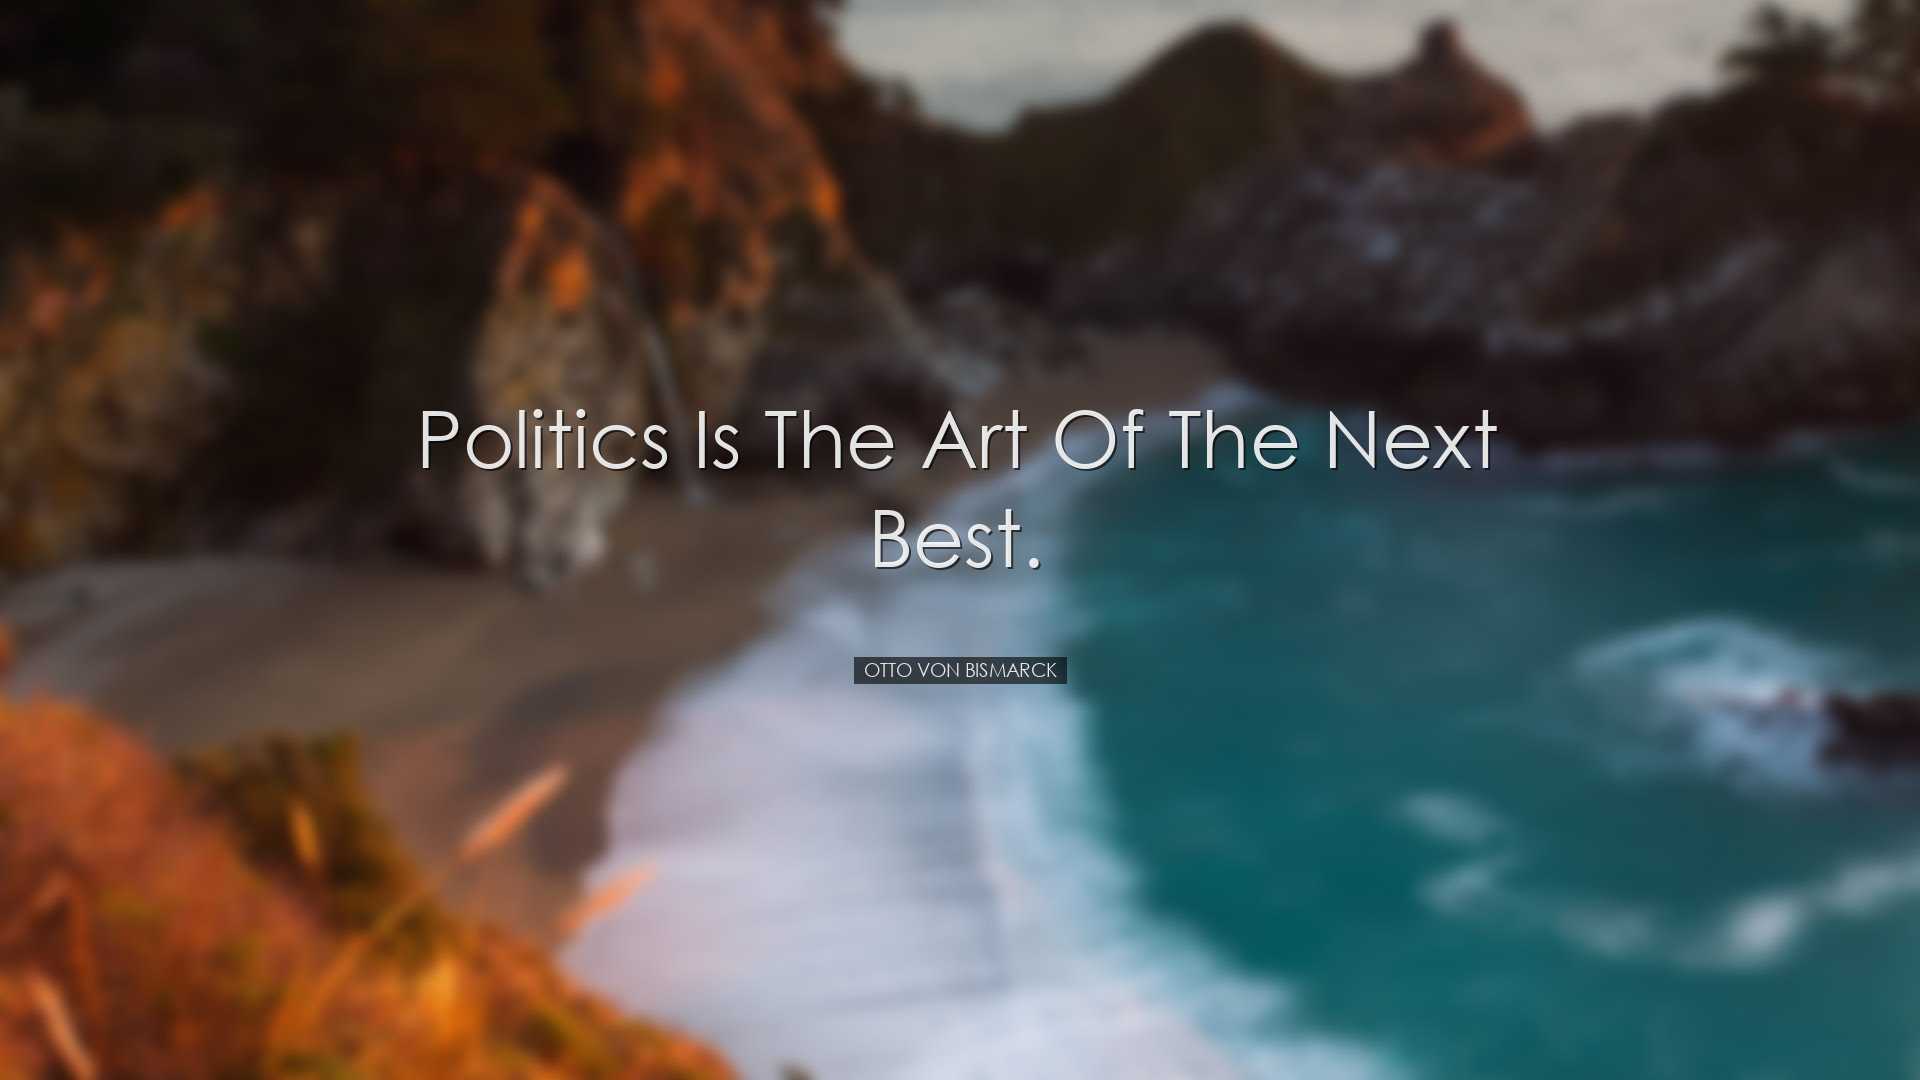 Politics is the art of the next best. - Otto von Bismarck